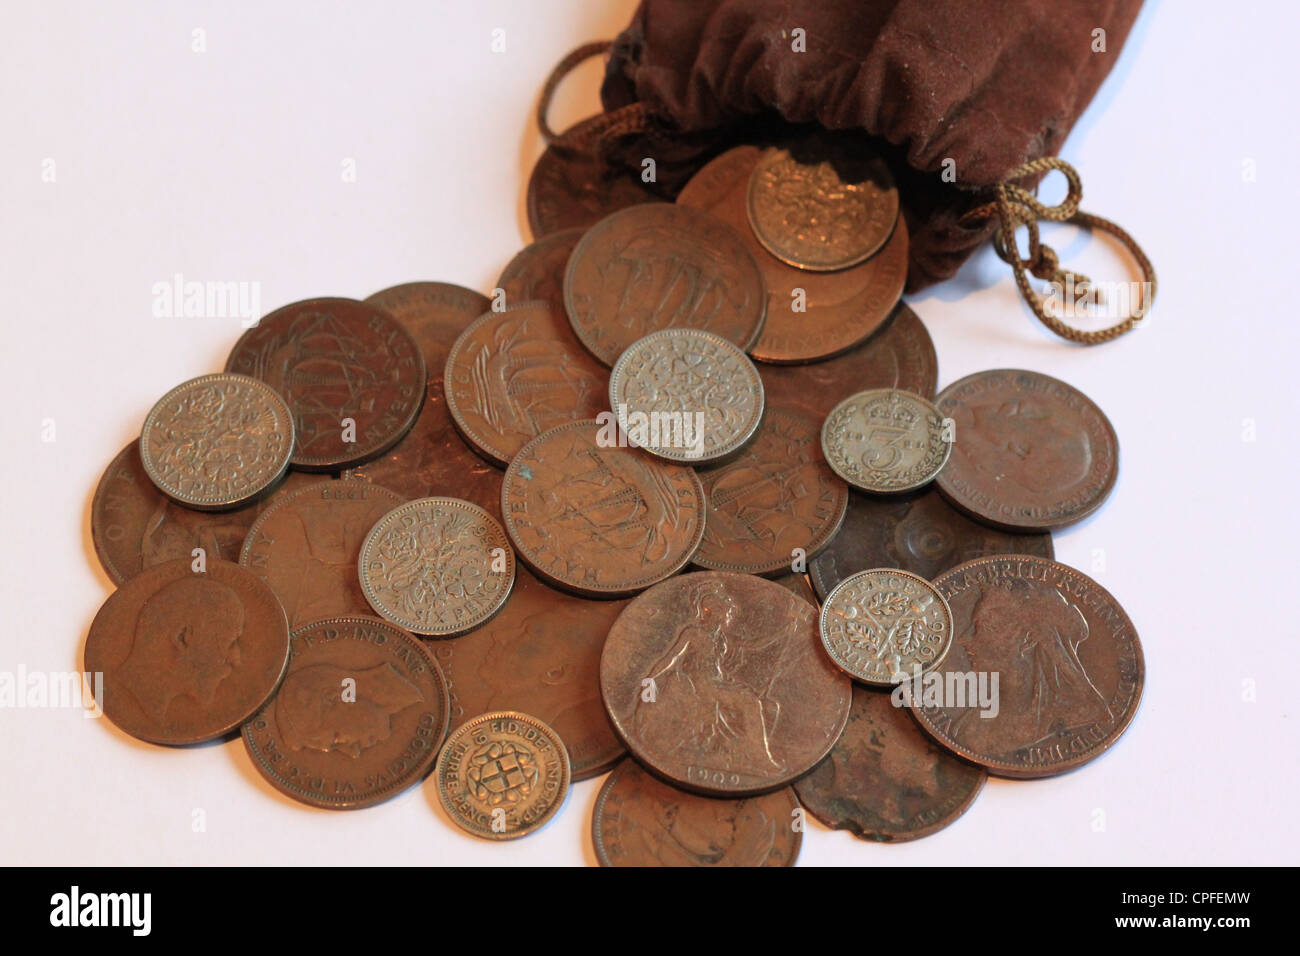 Old British coins dans un sac Banque D'Images